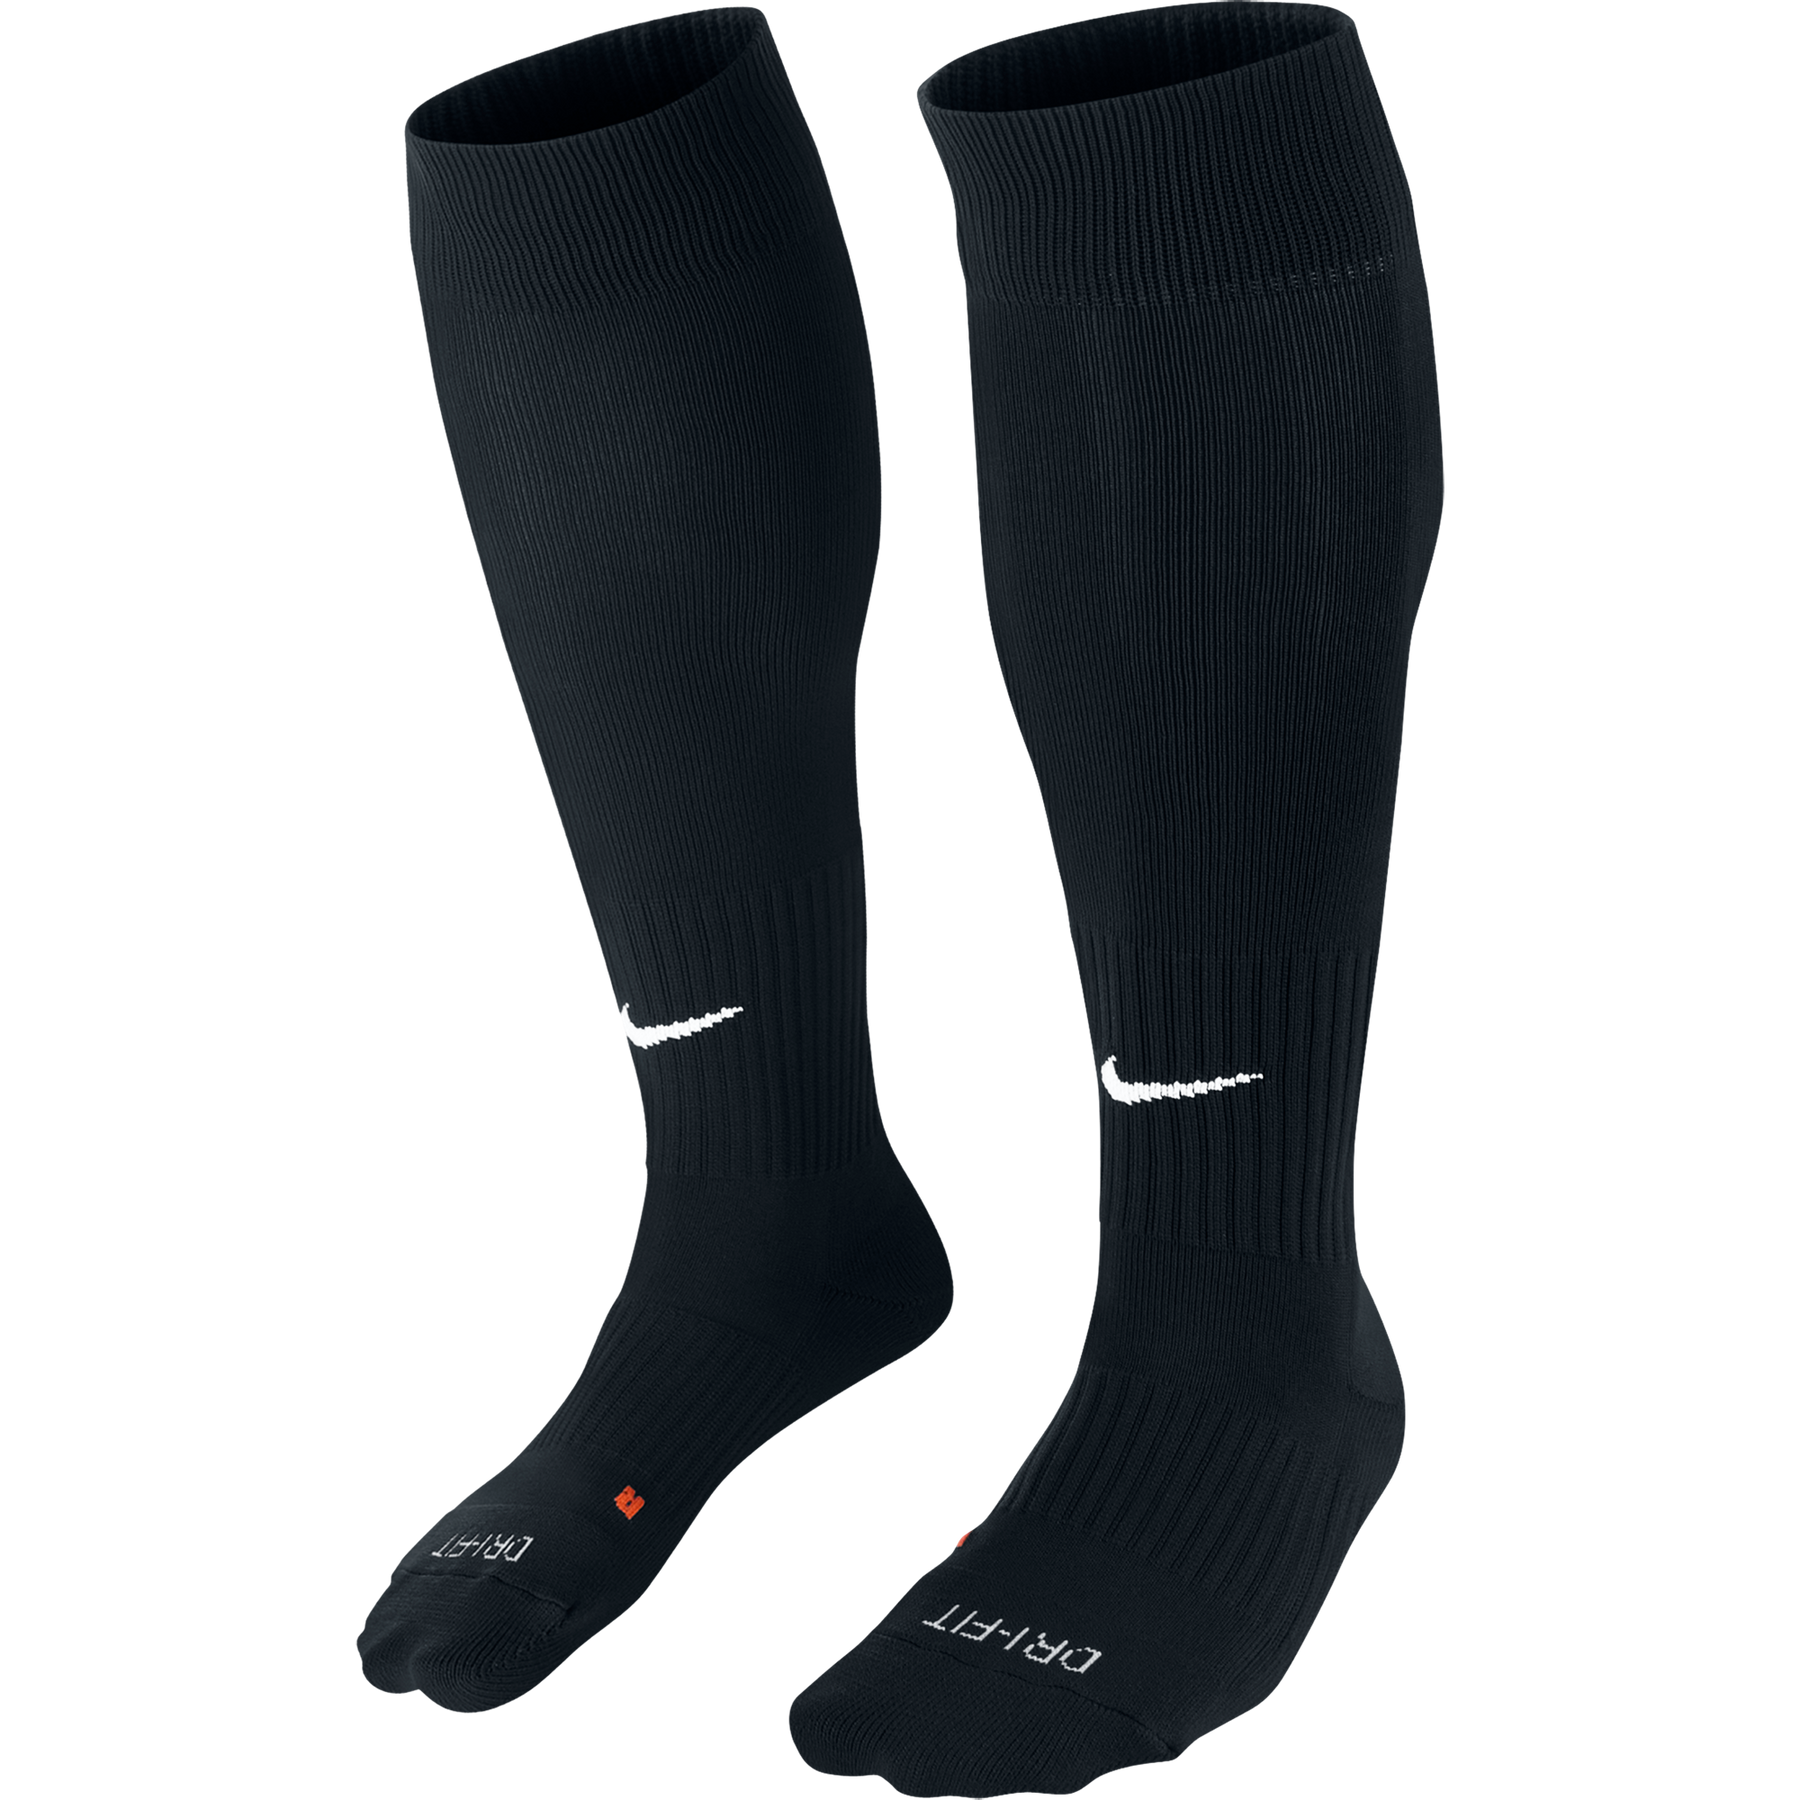 Lutterworth Town F.C.- Nike Classic II socks, Black. - Fanatics Supplies